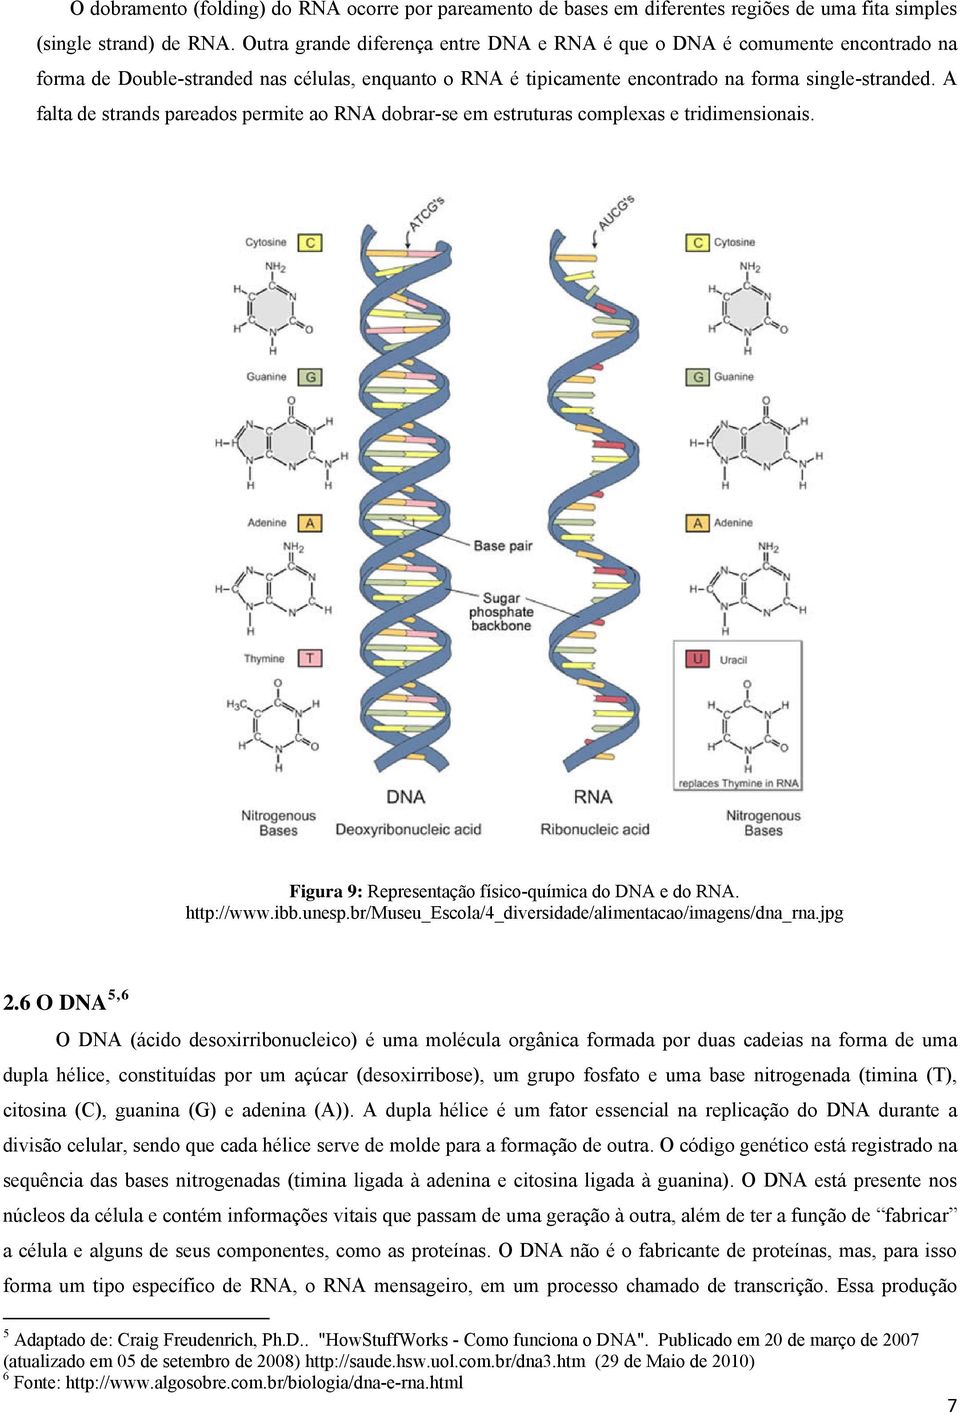 A falta de strands pareados permite ao RNA dobrar-se em estruturas complexas e tridimensionais. Figura 9: Representação físico-química do DNA e do RNA. http://www.ibb.unesp.